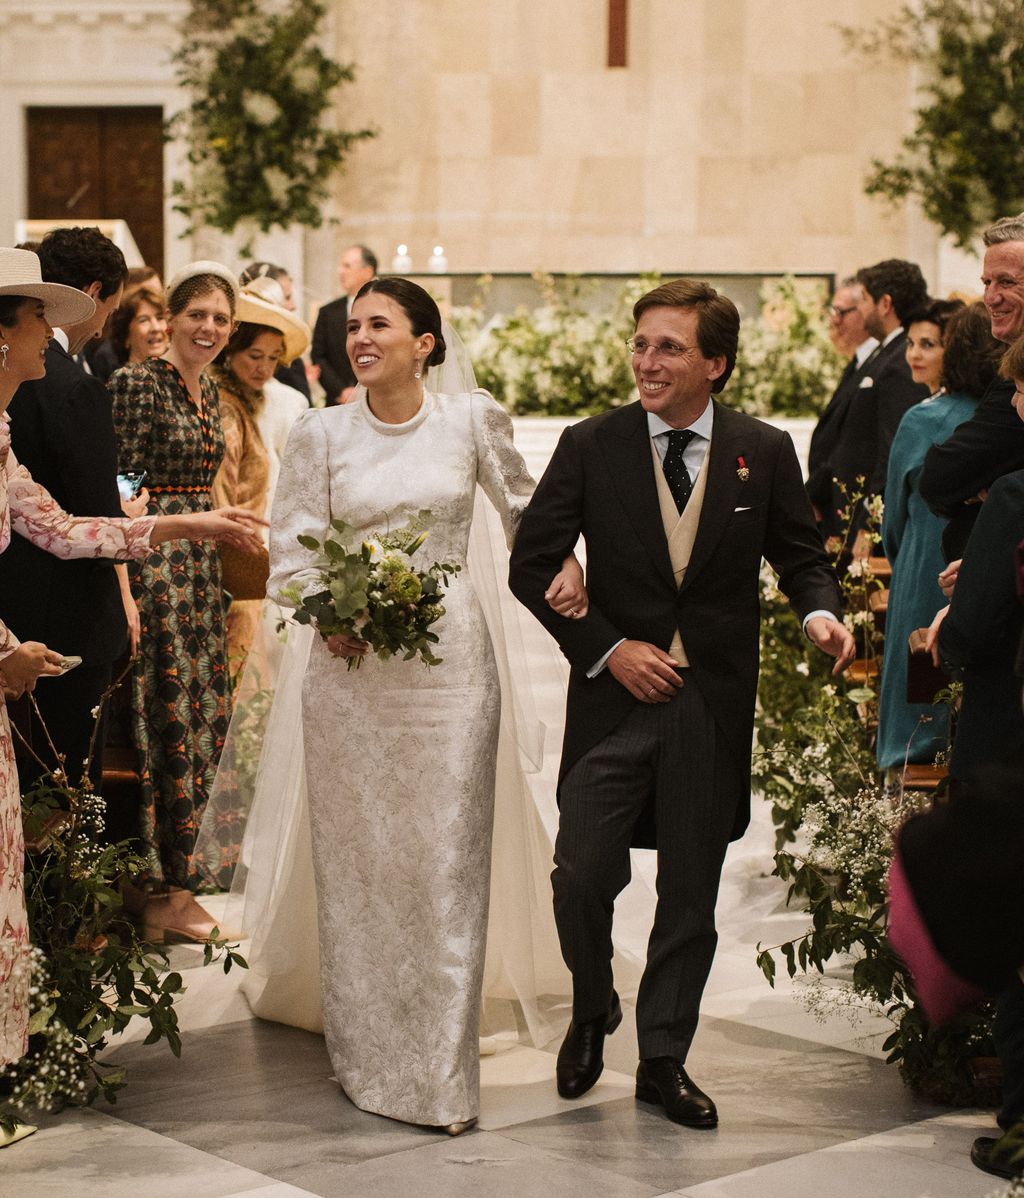 El alcalde de Madrid, José Luis Martínez Almeida, y su esposa, Teresa Urquijo, sonríen a los invitados tras la ceremonia de boda celebrada en la iglesia de San Francisco de Borja de Madrid este sábado.